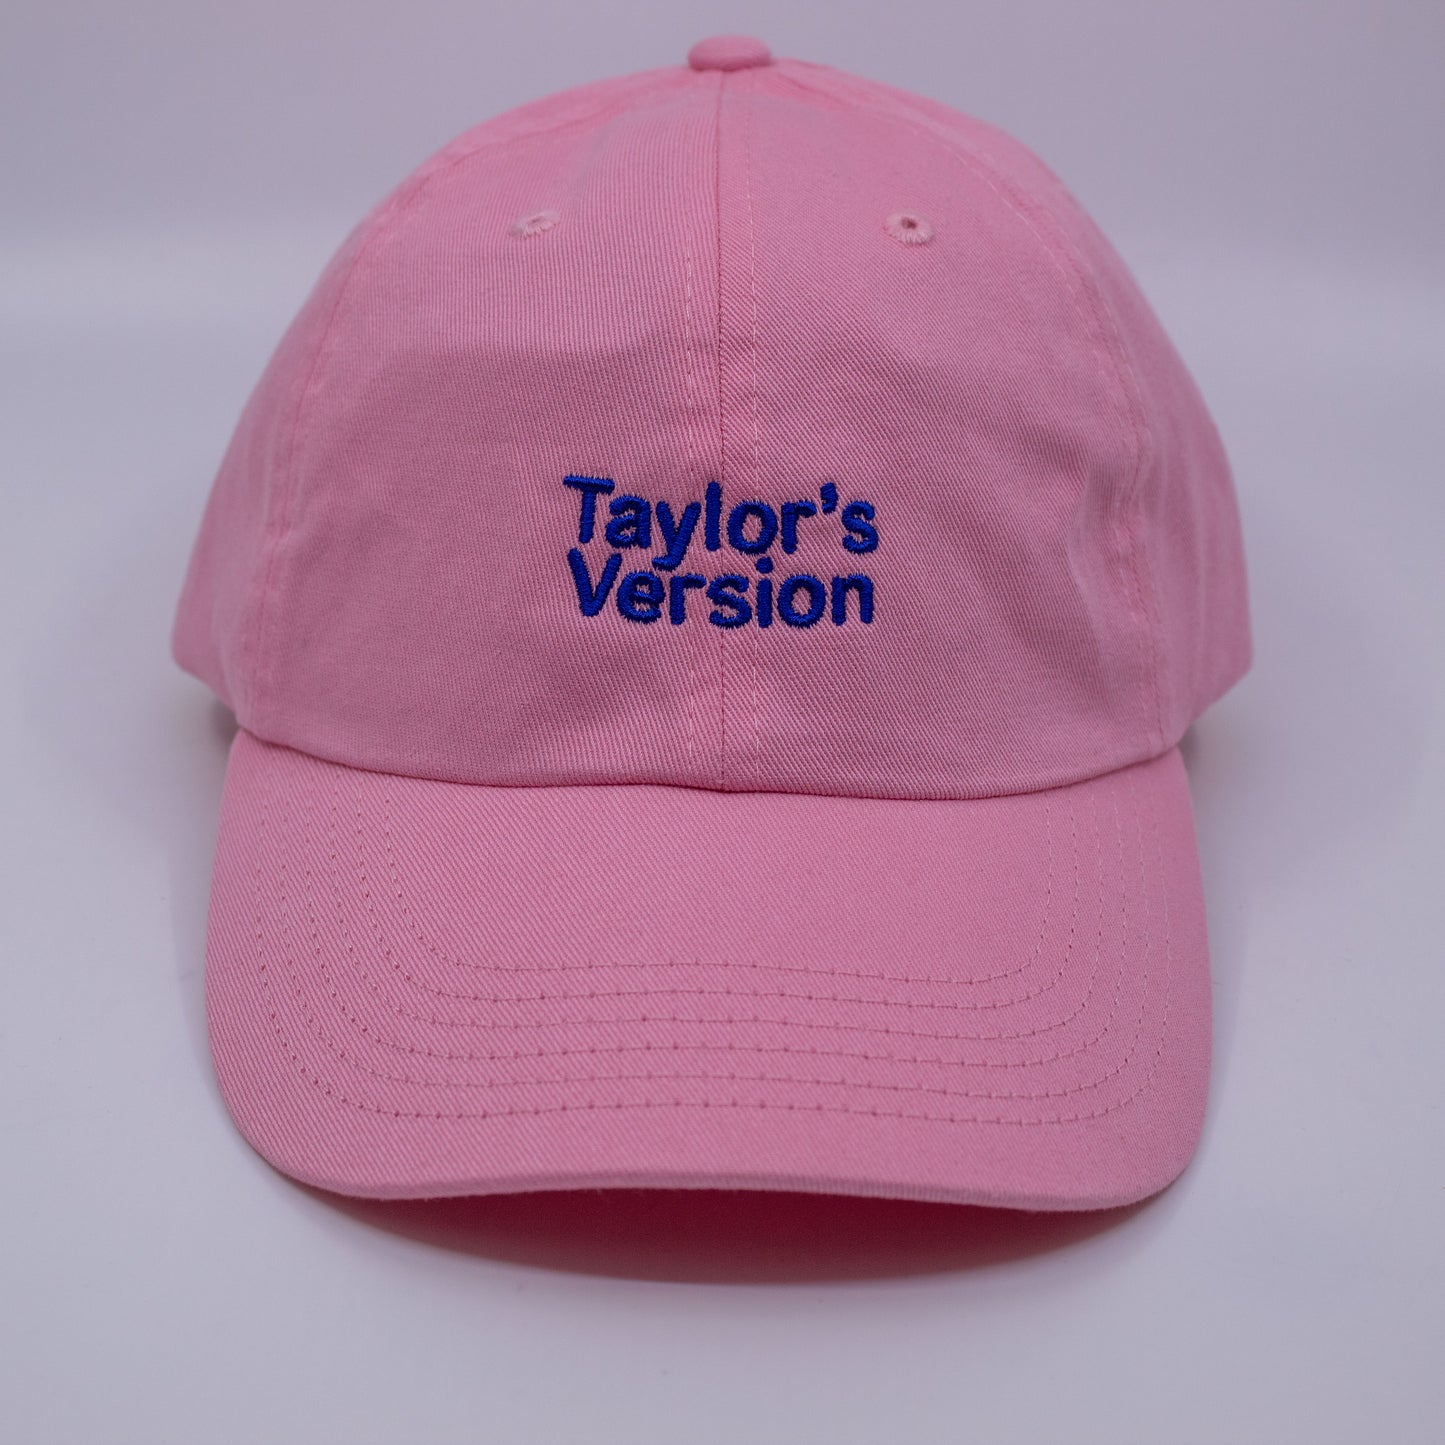 Standard Goods Taylor's Version Dad Hat - Pink Blue